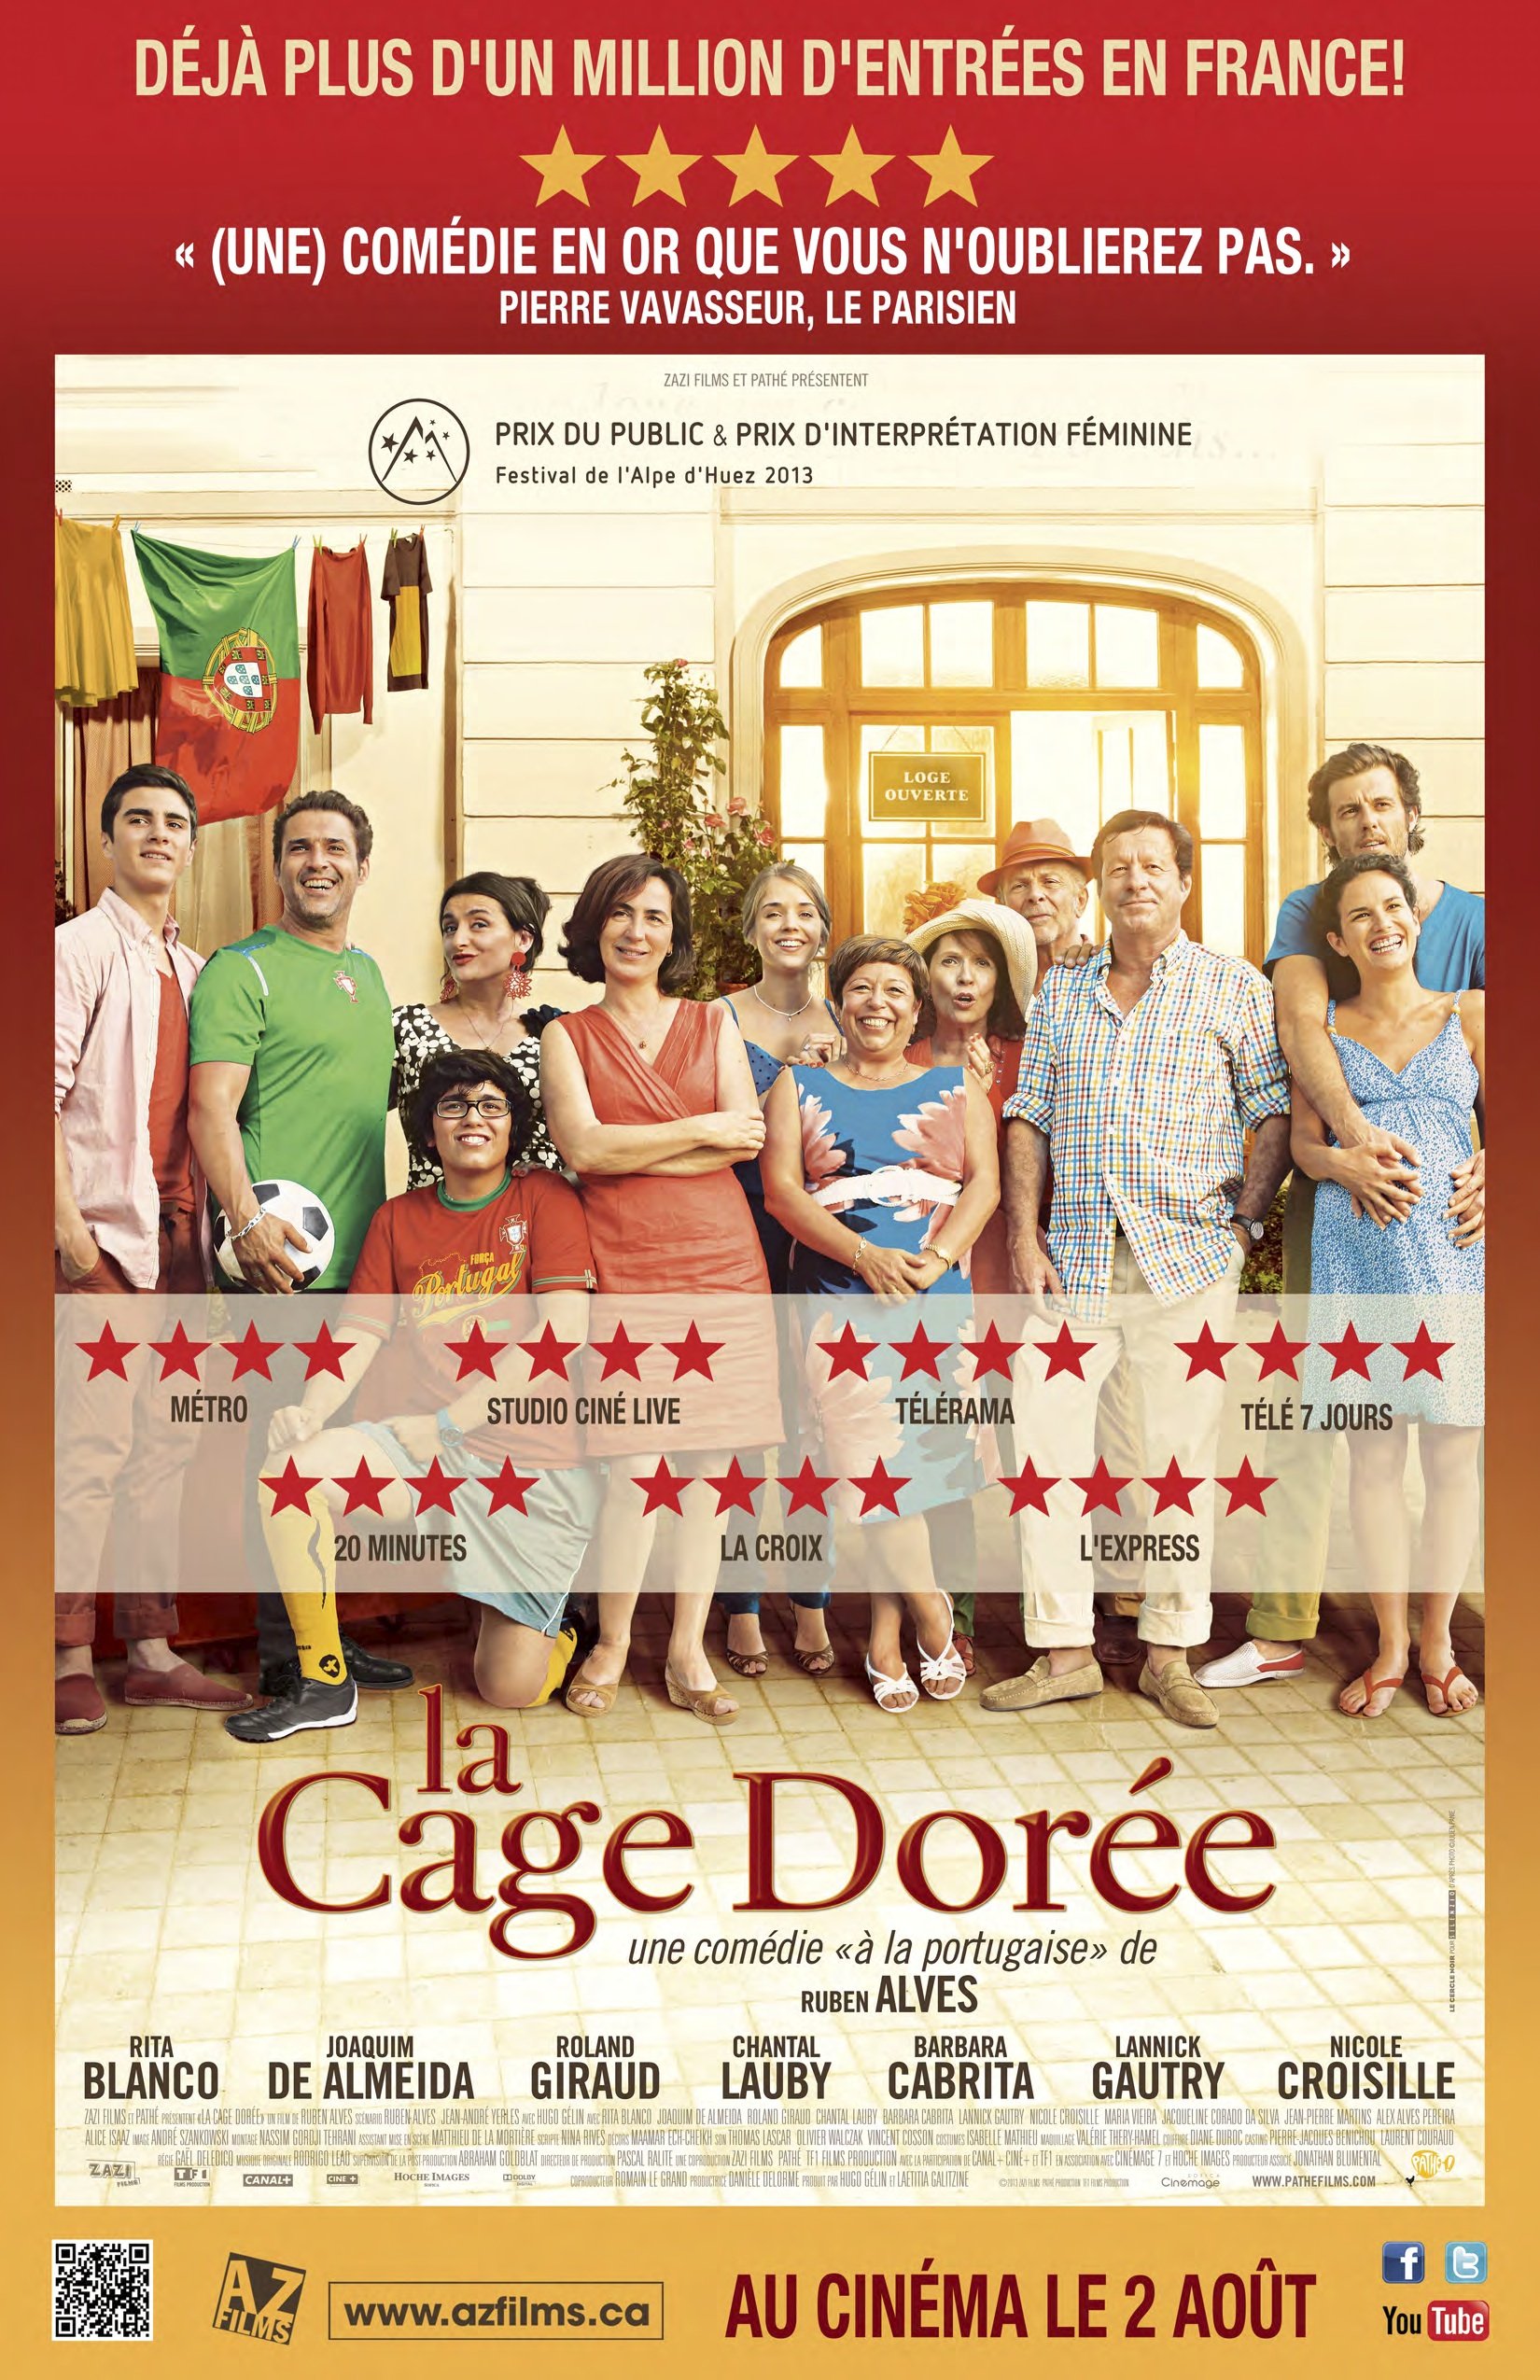 Poster of the movie La Cage dorée